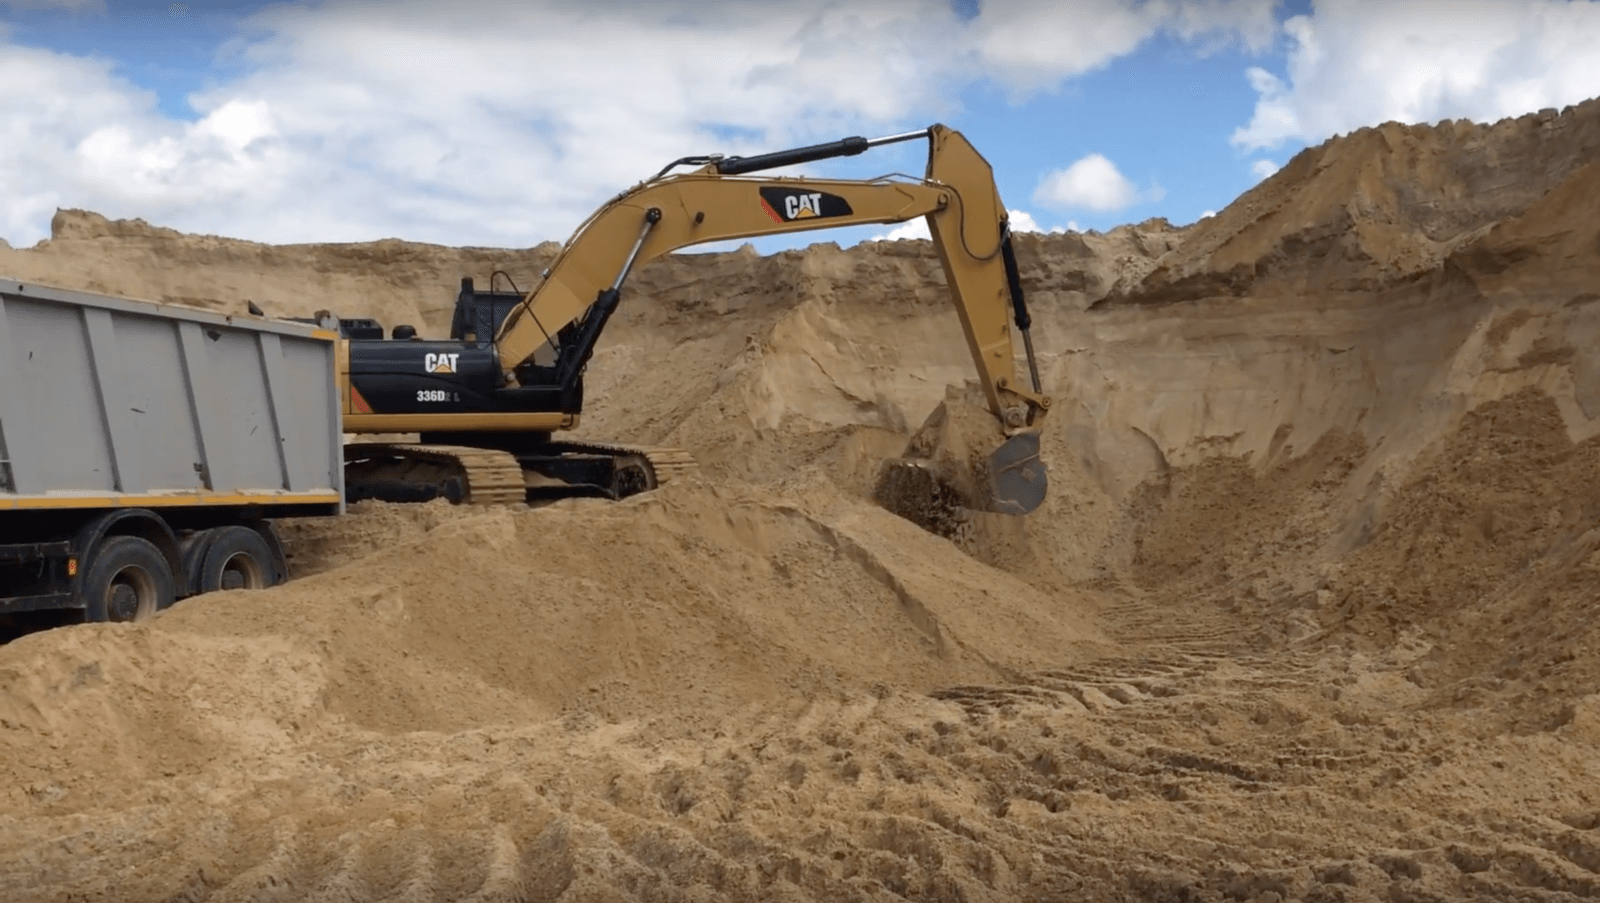 строительный песок